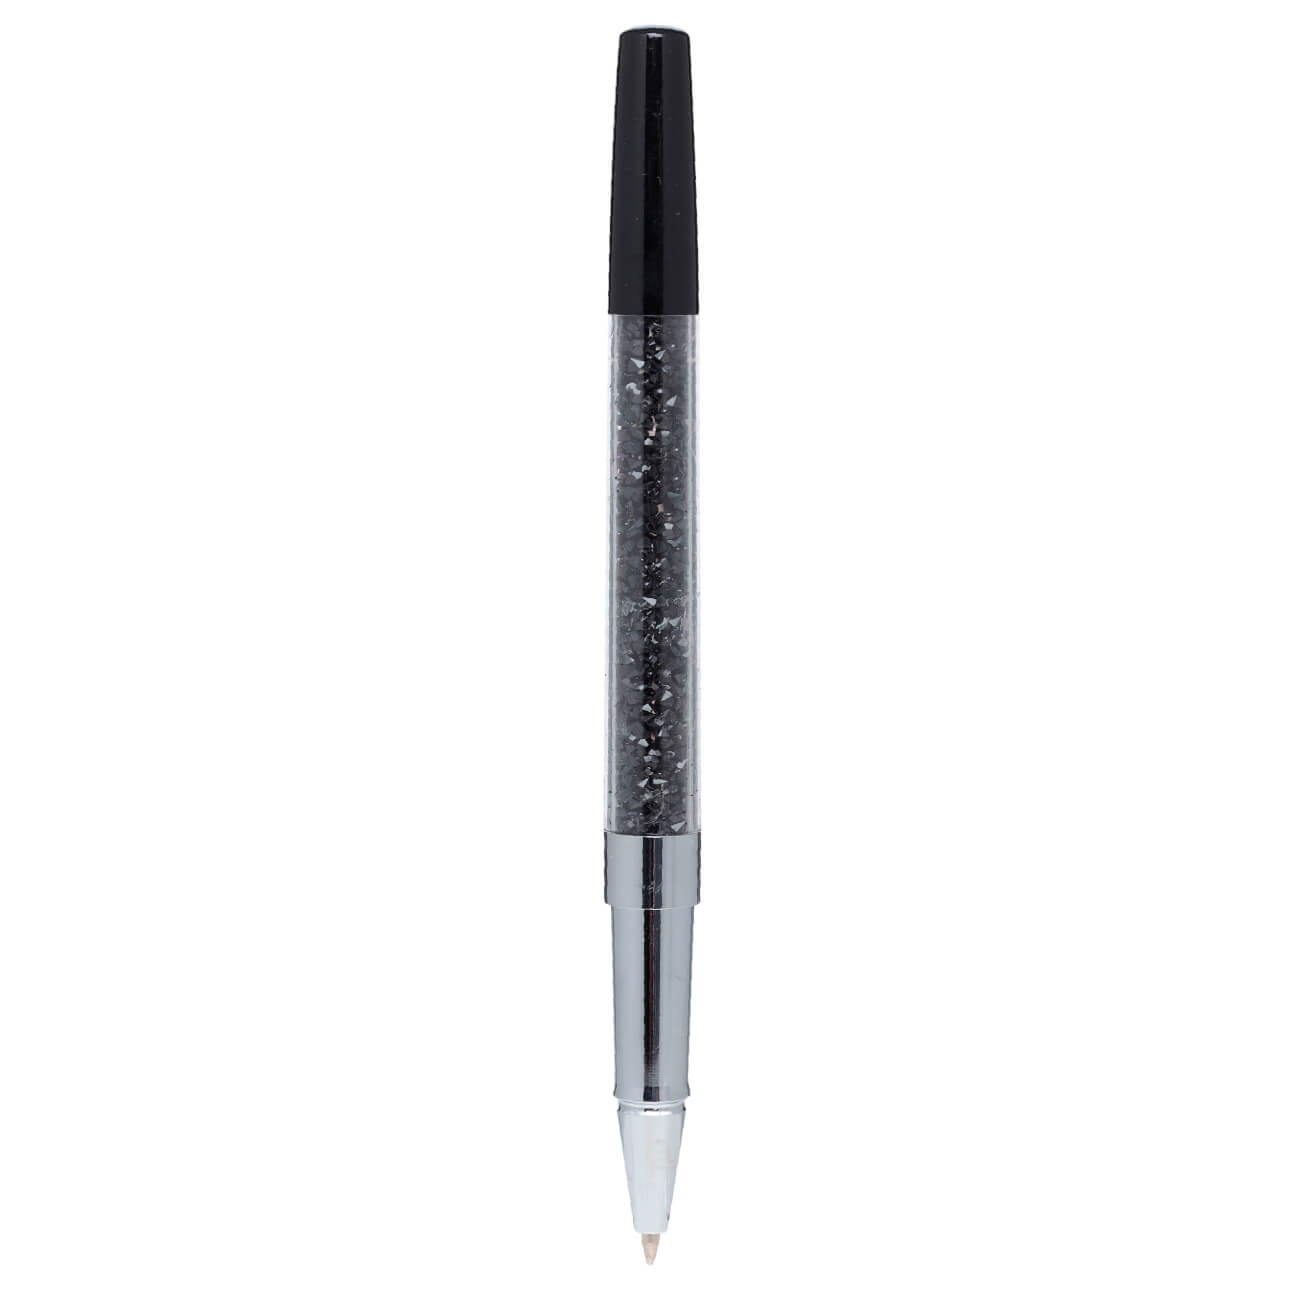 Ручка гелевая, 15 см, сталь, черная, Кристаллы, Draw cristal этажерка универсальная сталь 4 секции 45х86х26 см на колесах с мелкосетчатыми корзинами черная a190005